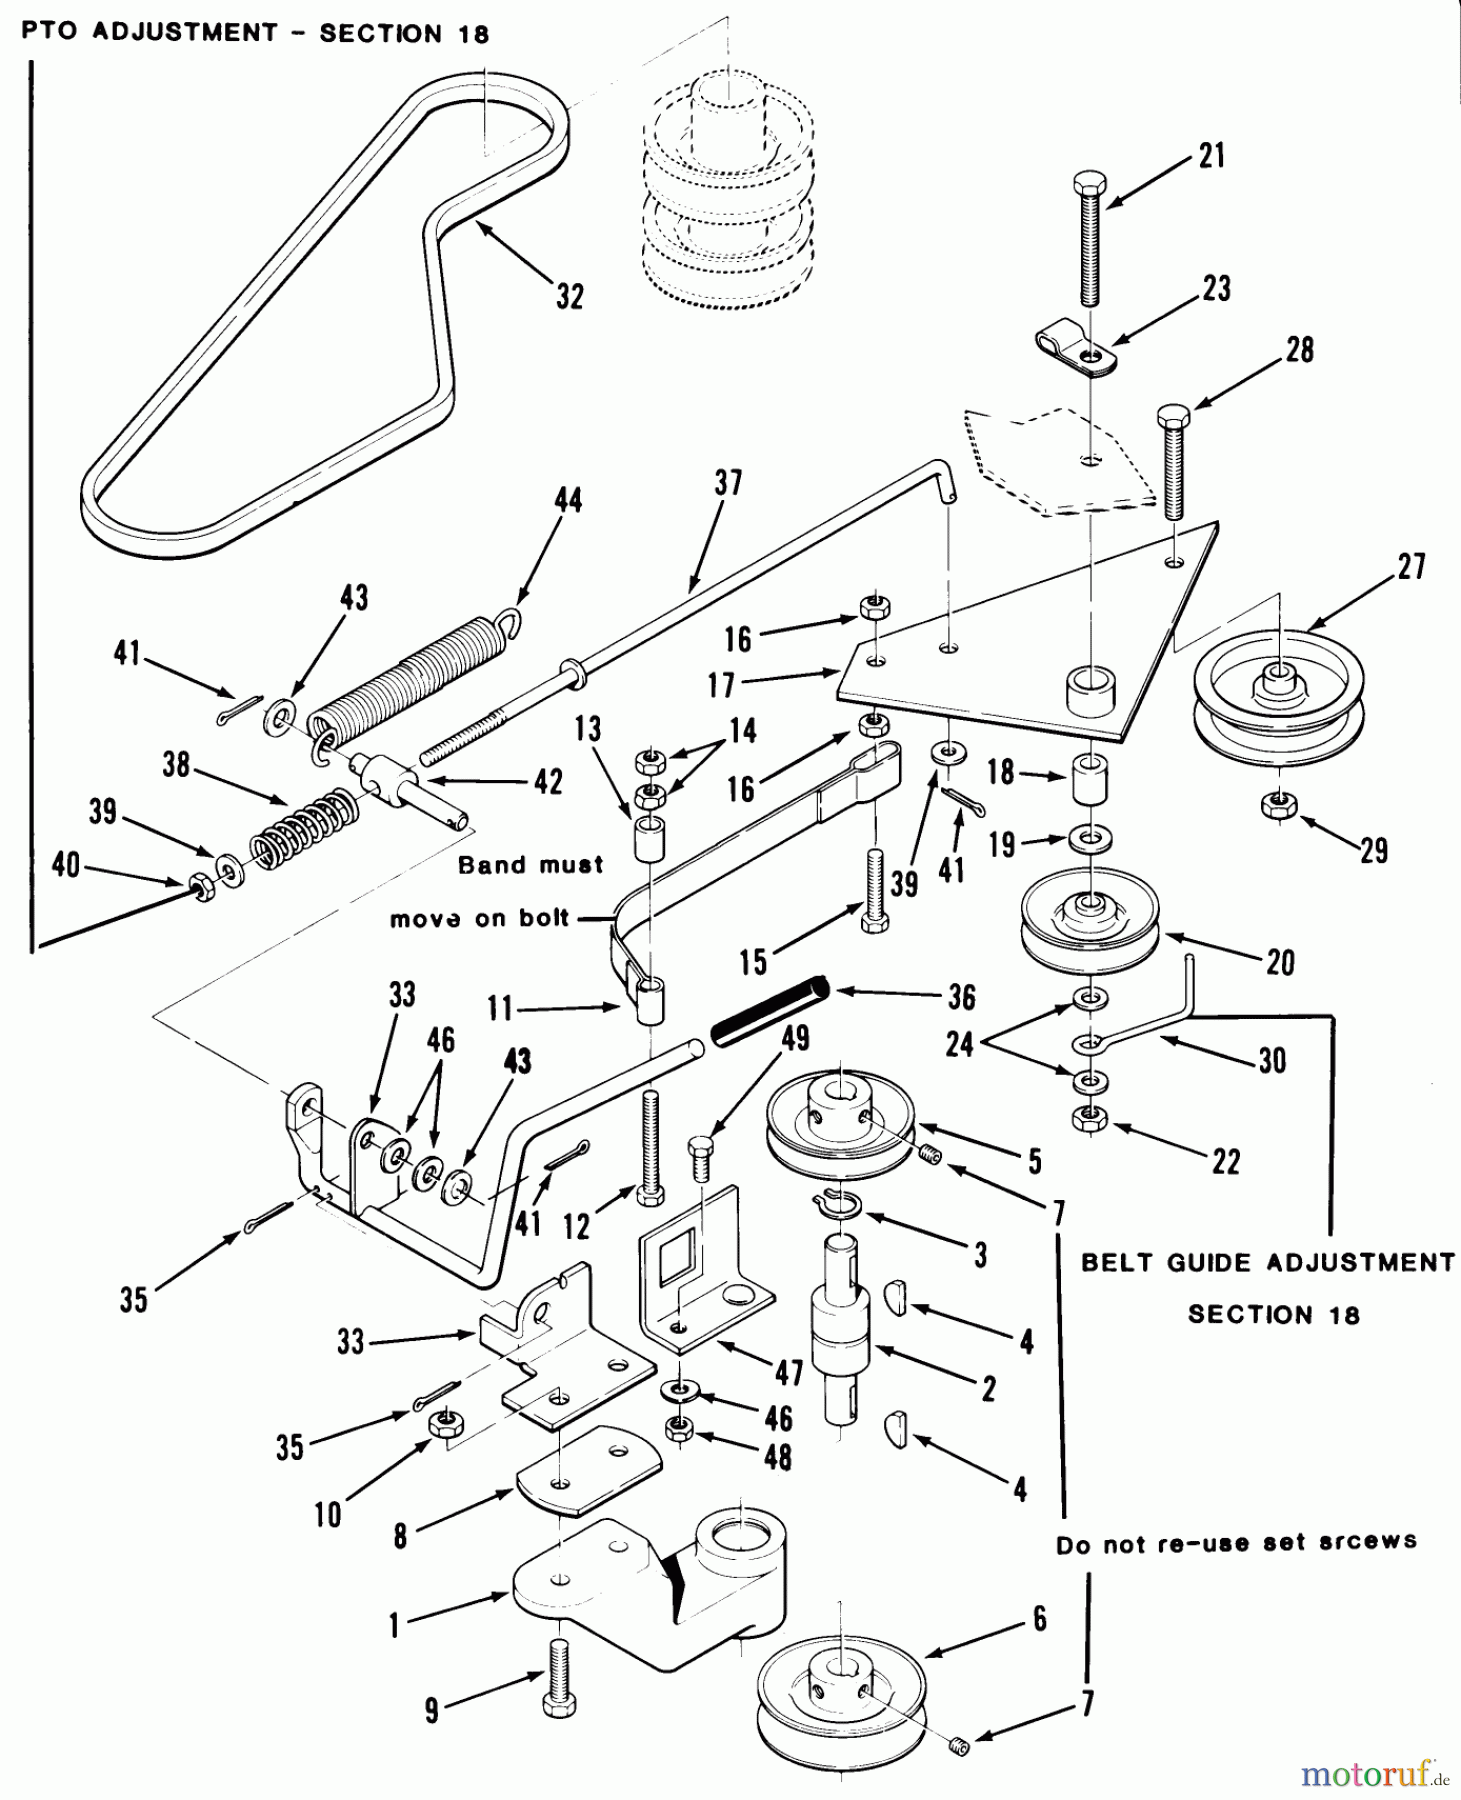  Toro Neu Mowers, Rear-Engine Rider 33-08X301 (108-R) - Toro 108-R Rear Engine Rider, 1985 PTO CLUTCH, PULLEYS, AND CONTROLS